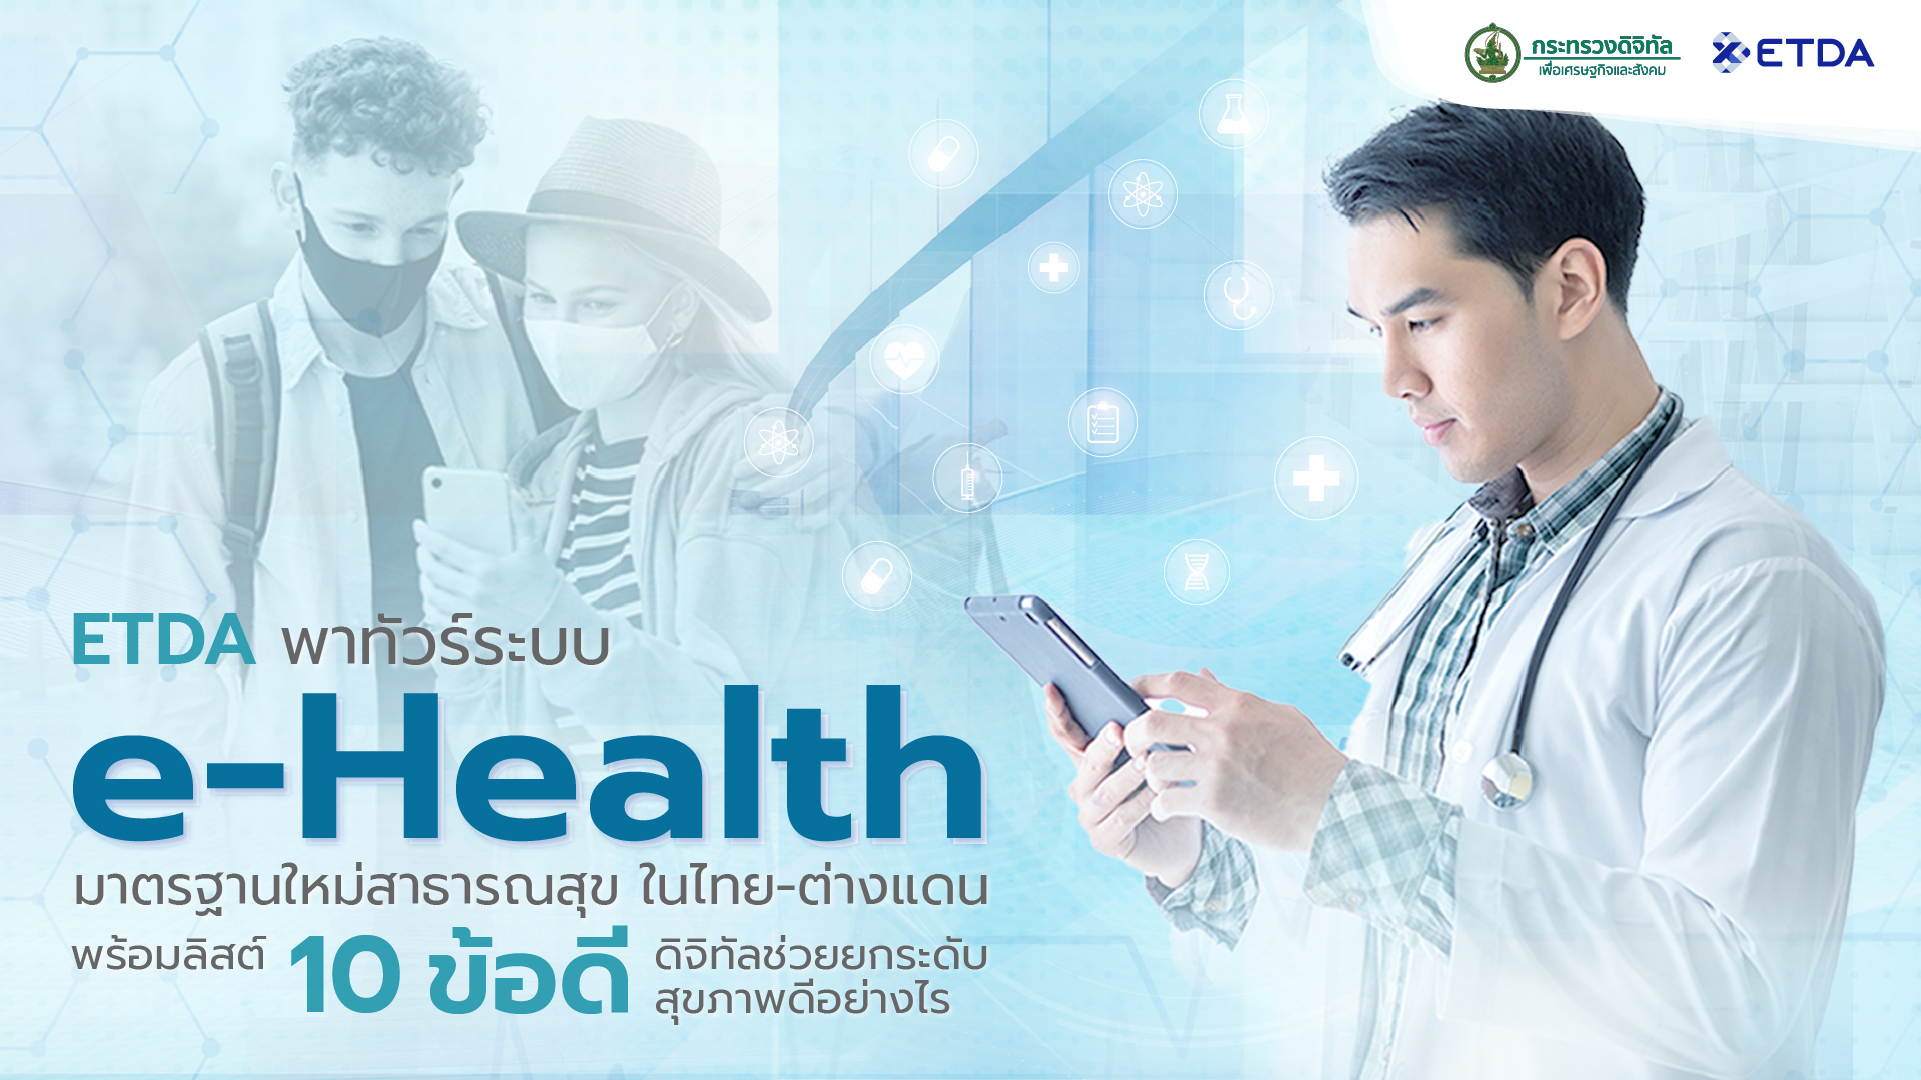 ETDA พาทัวร์ระบบ e-Health มาตรฐานใหม่สาธารณสุข ในไทย-ต่างแดน พร้อมลิสต์ 10 ข้อดี ดิจิทัลช่วยยกระดับสุขภาพดีอย่างไร